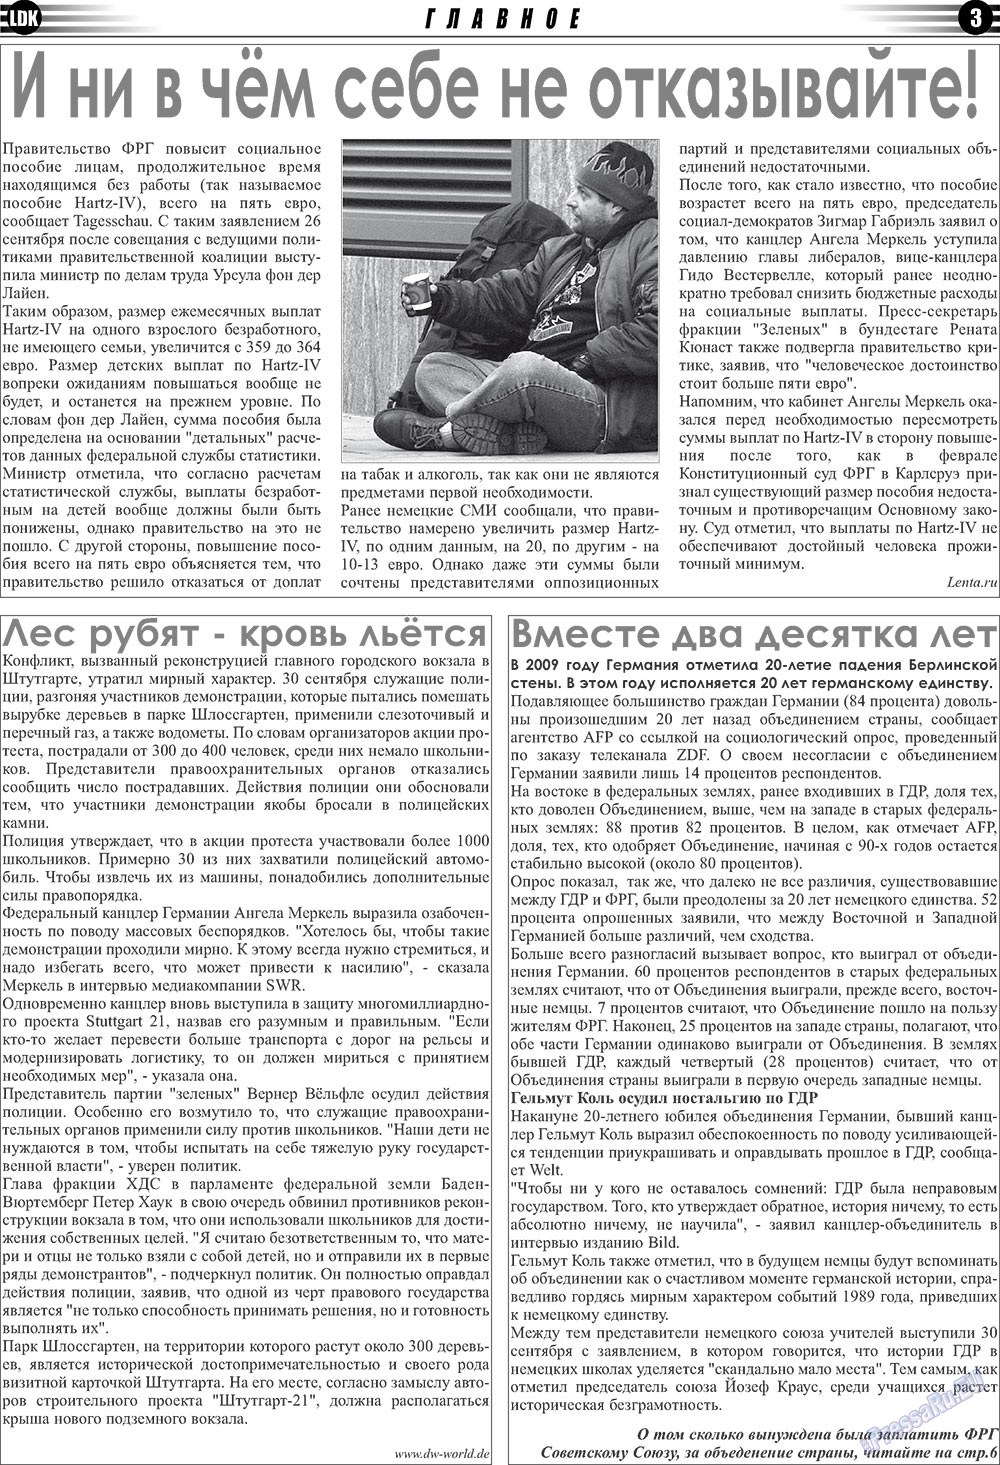 LDK по-русски (газета). 2010 год, номер 10, стр. 3